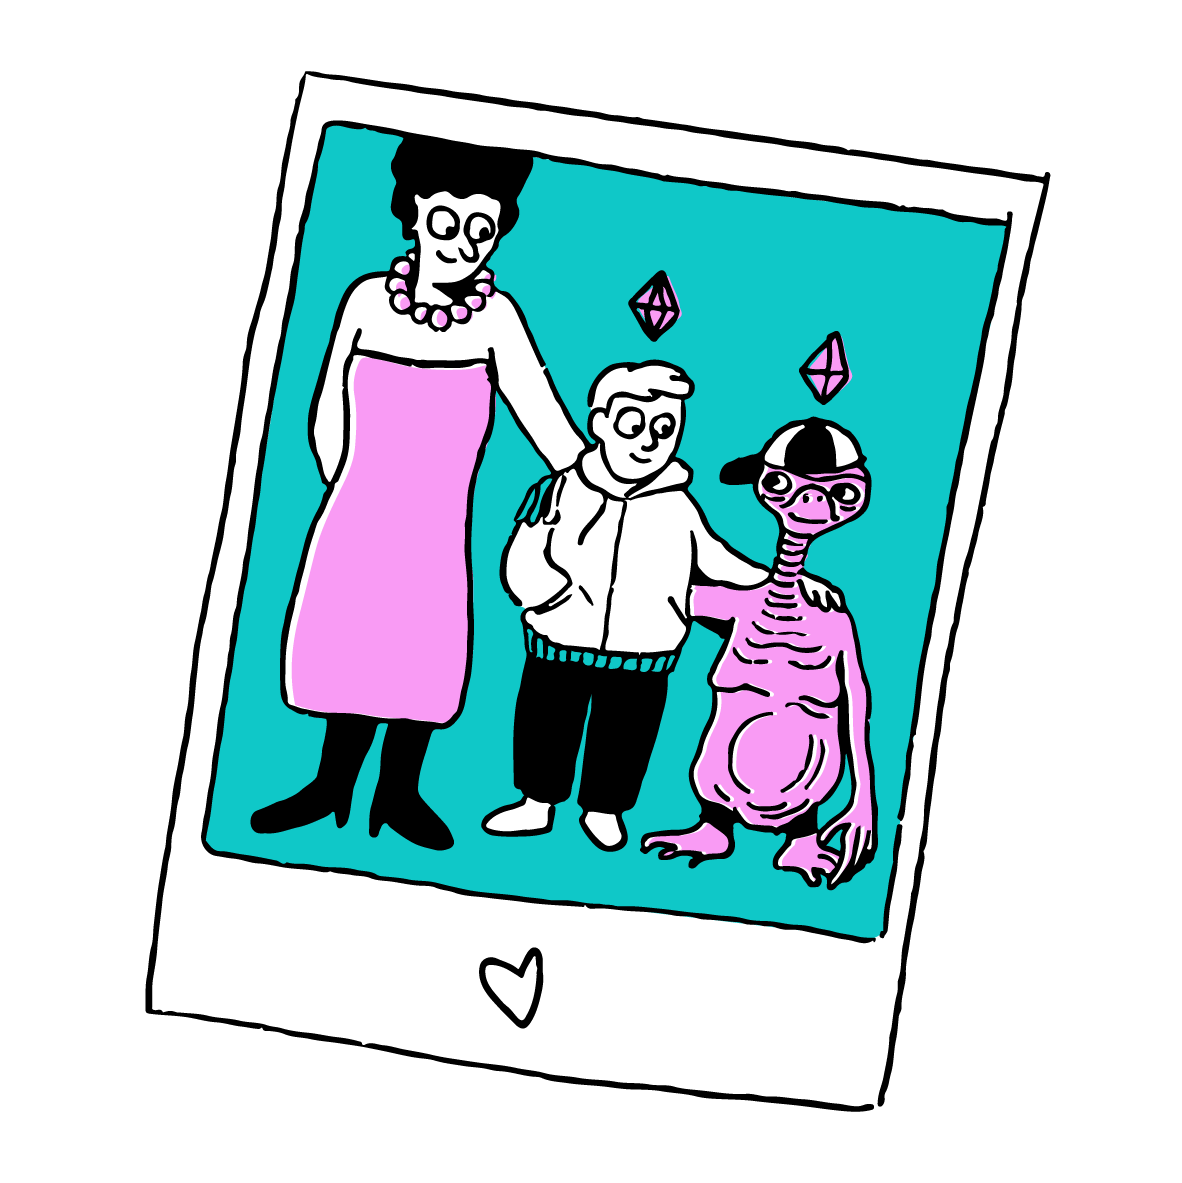 Dessin d'une photo en format Polaroïd, avec une famille marrante et originale. Une maman qui tient son fils par le cou et son fils qui tient E.T par le coup. Le fils et E.T ont tous les deux les losanges au dessus de la tête en référence au jeu vidéos des années 90/2000 les SIMS. En bas de la photo, ils y a un coeur annoté.